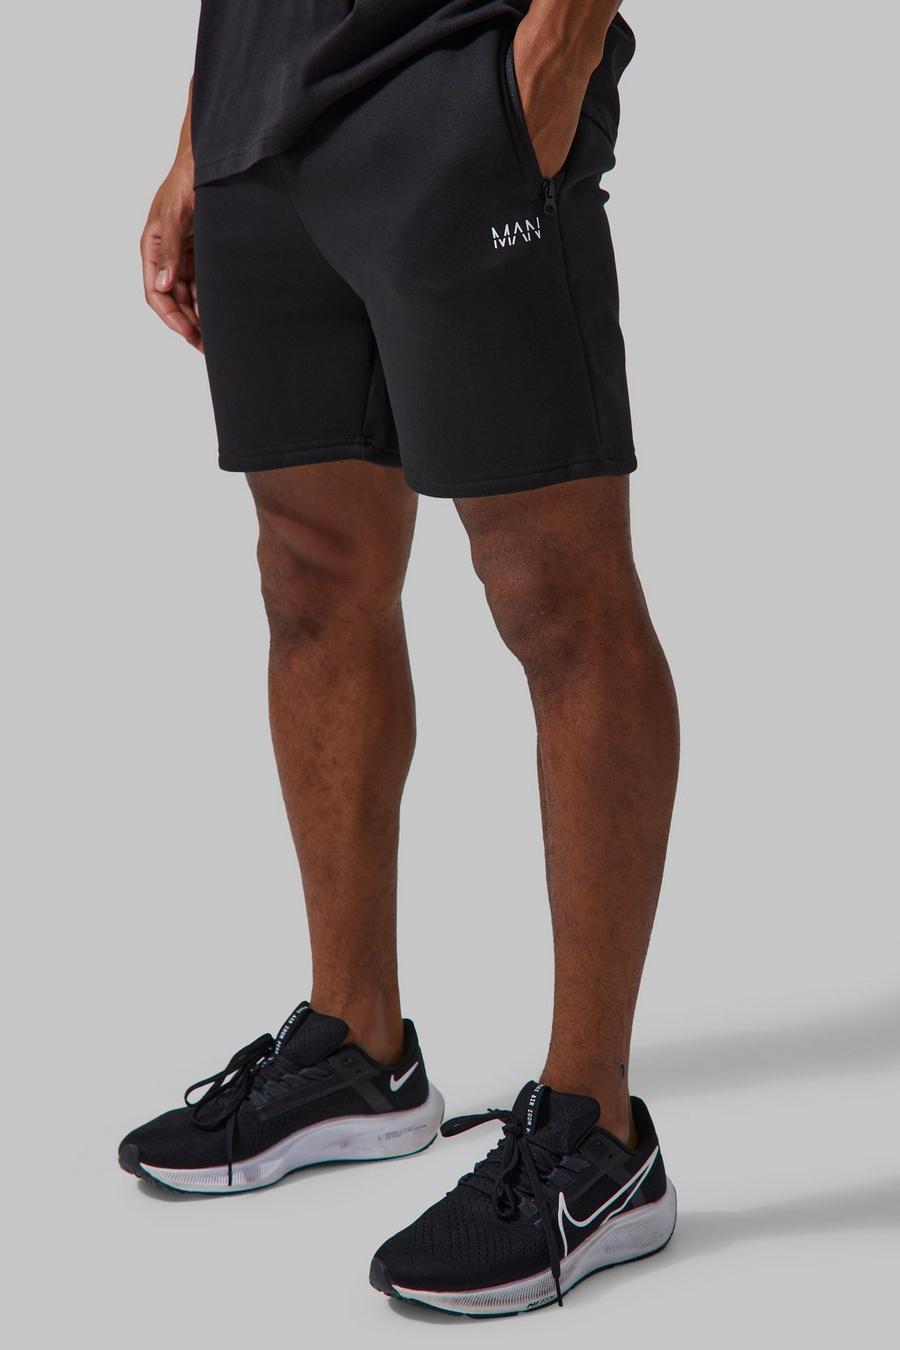 Black noir Man Active Gym Muscle Fit Shorts